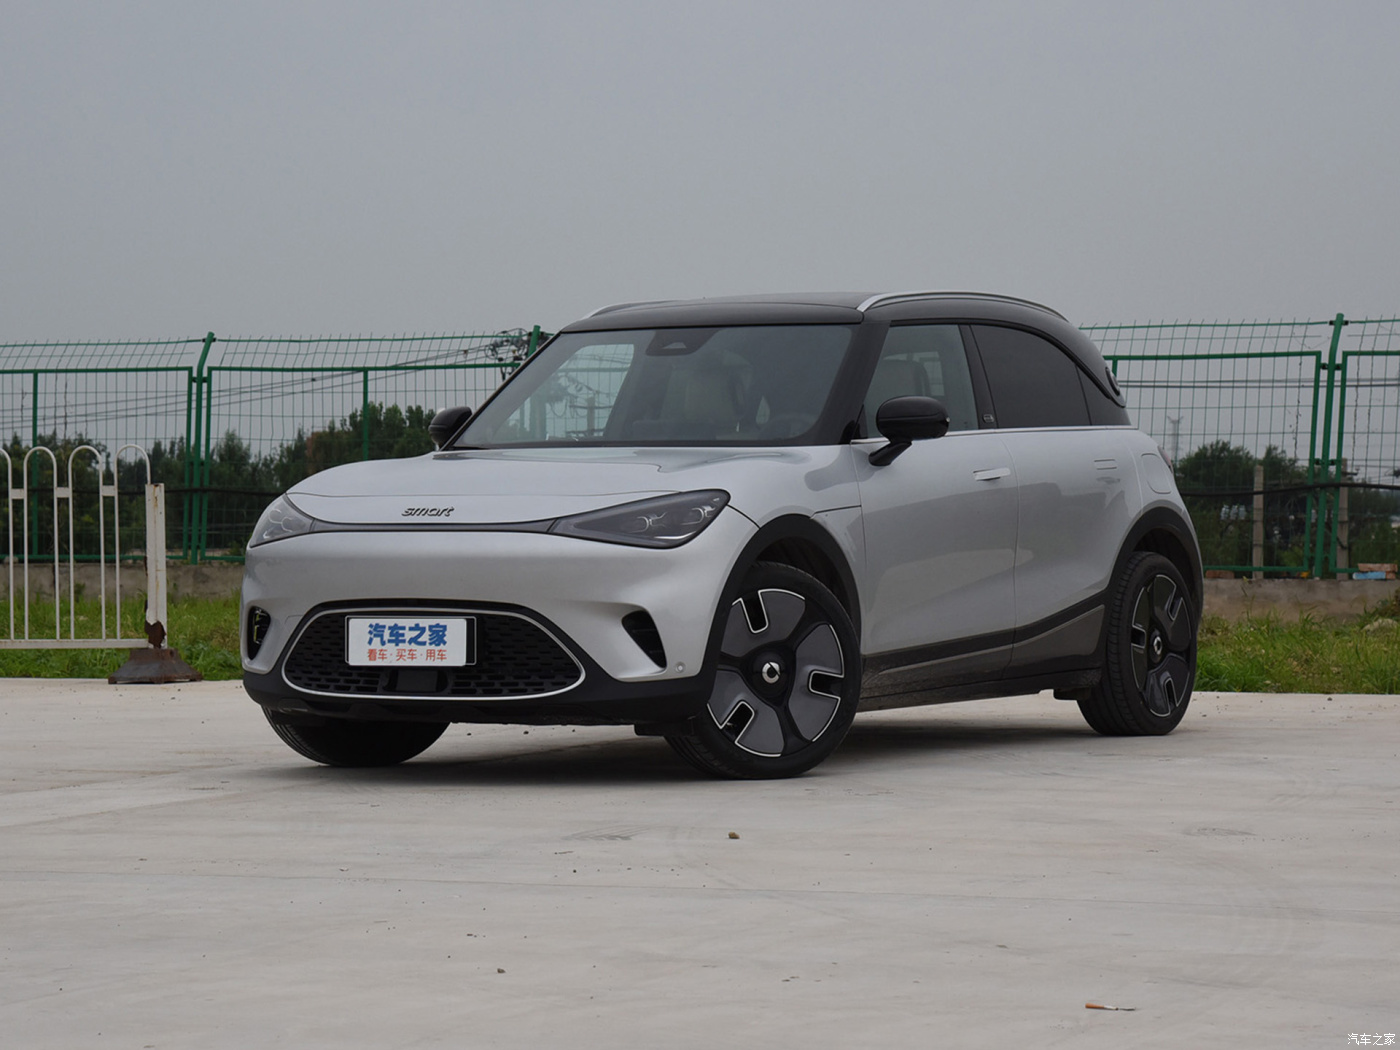 Выгодные цены на покупку электромобиля Smart #1 под заказ из Китая.